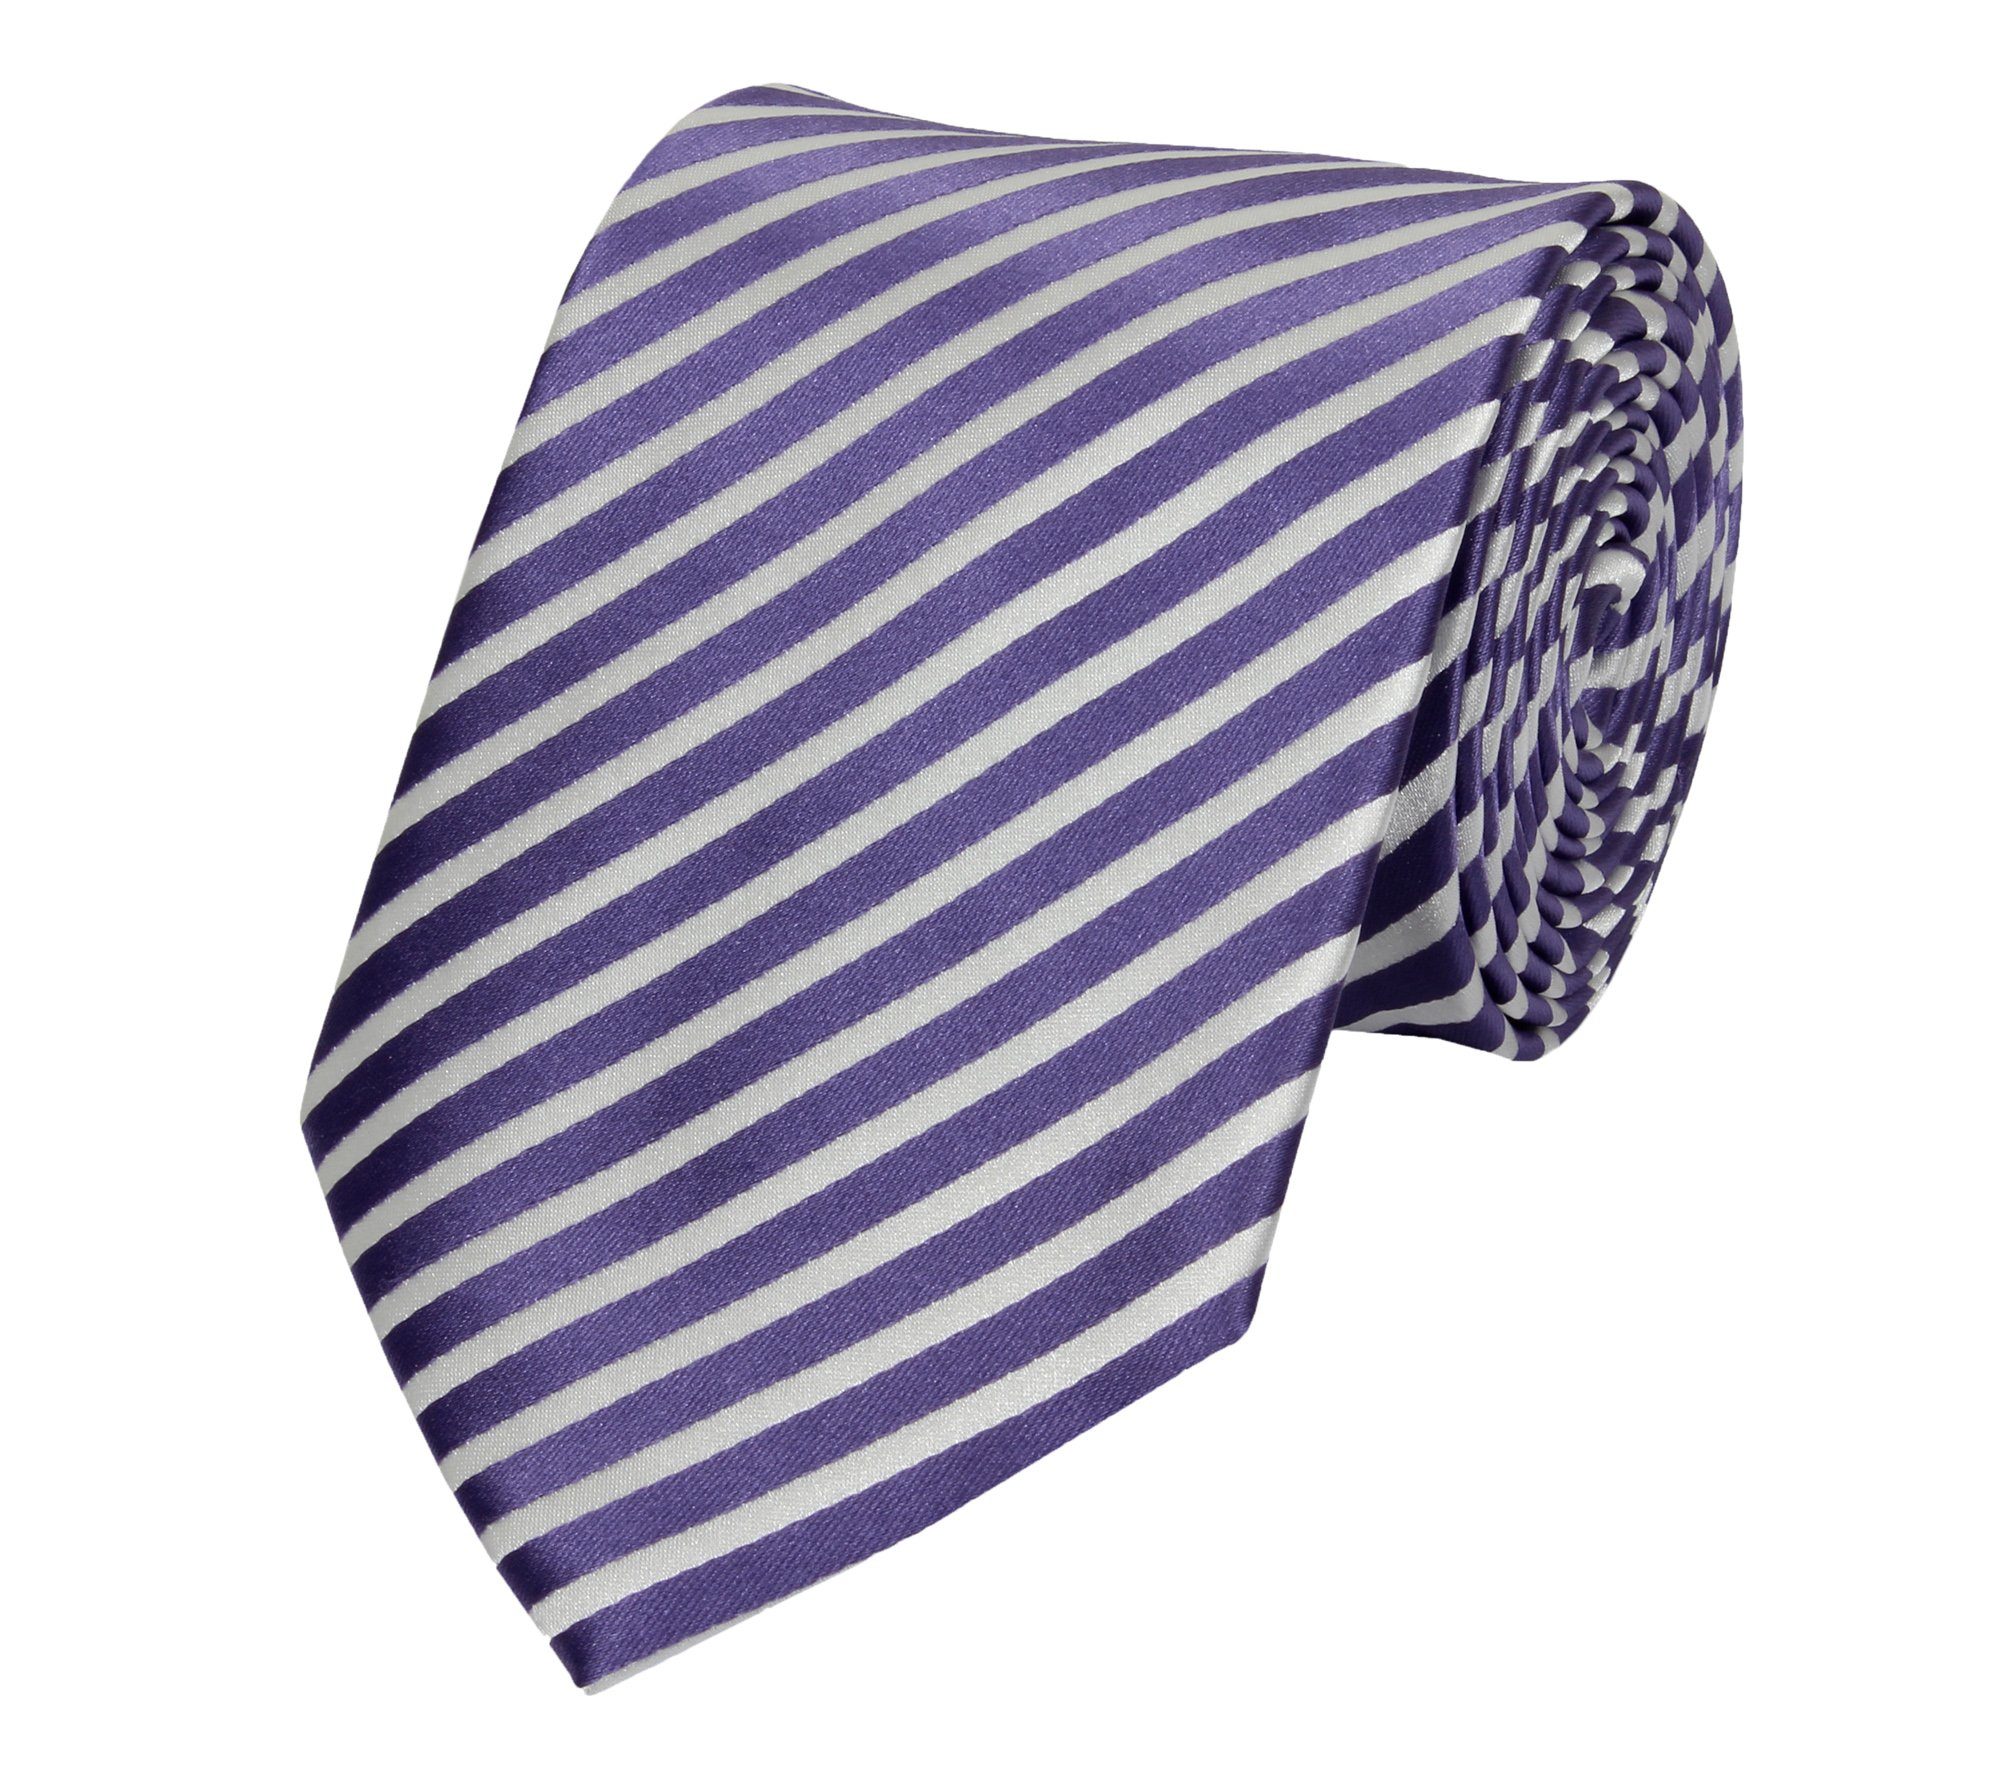 Fabio Farini Krawatte Herren Krawatten mit Farbton Lila - Schlips in 8cm Breite (ohne Box, Gestreift) Breit (8cm), Lila/Weiß